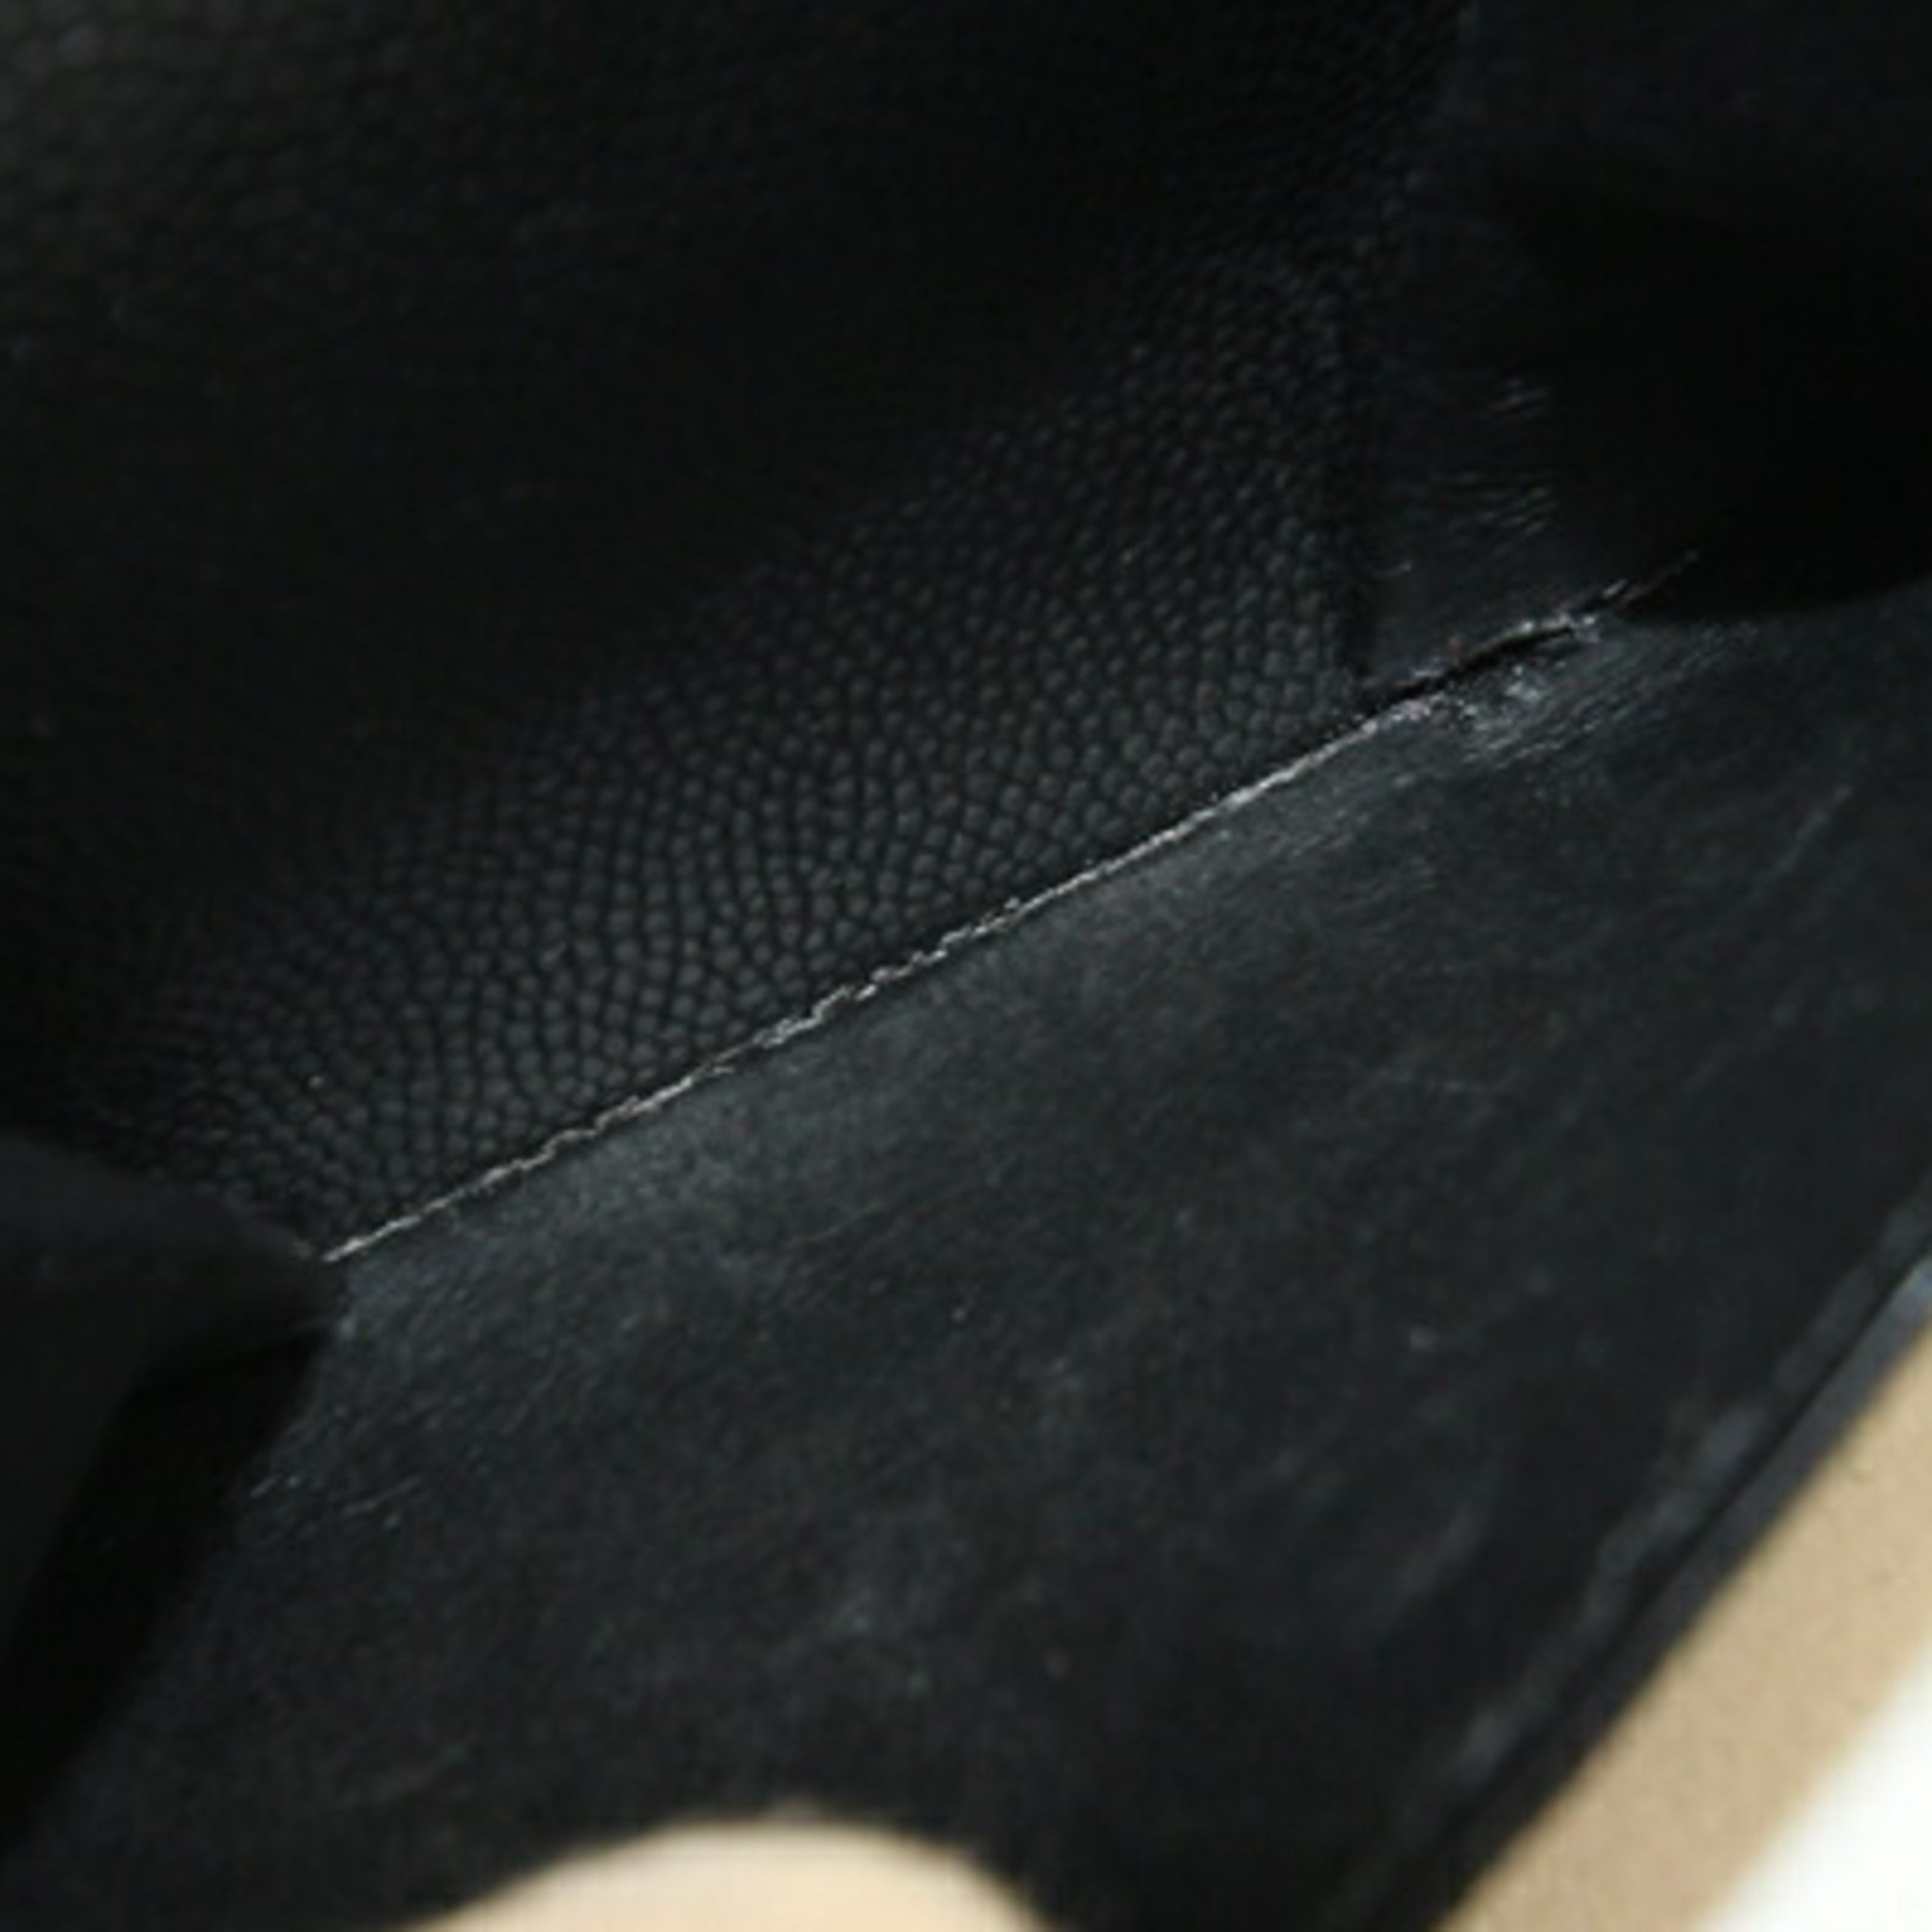 Saint Laurent Bi-fold Wallet 396303 Black Leather Compact Men's SAINT LAURENT